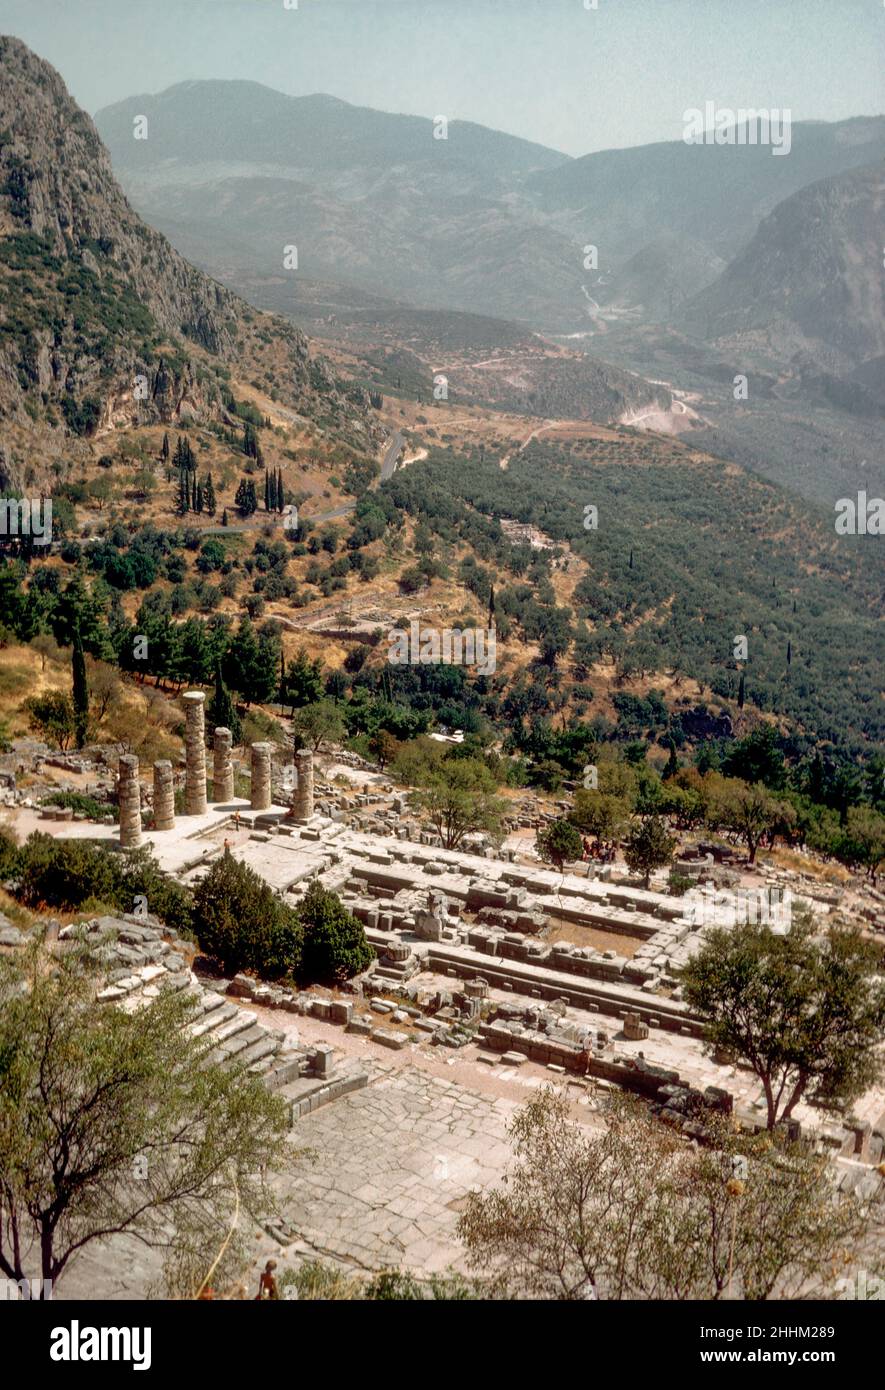 Temple of Apollo, Delphi, Greece, in 1974 Stock Photo